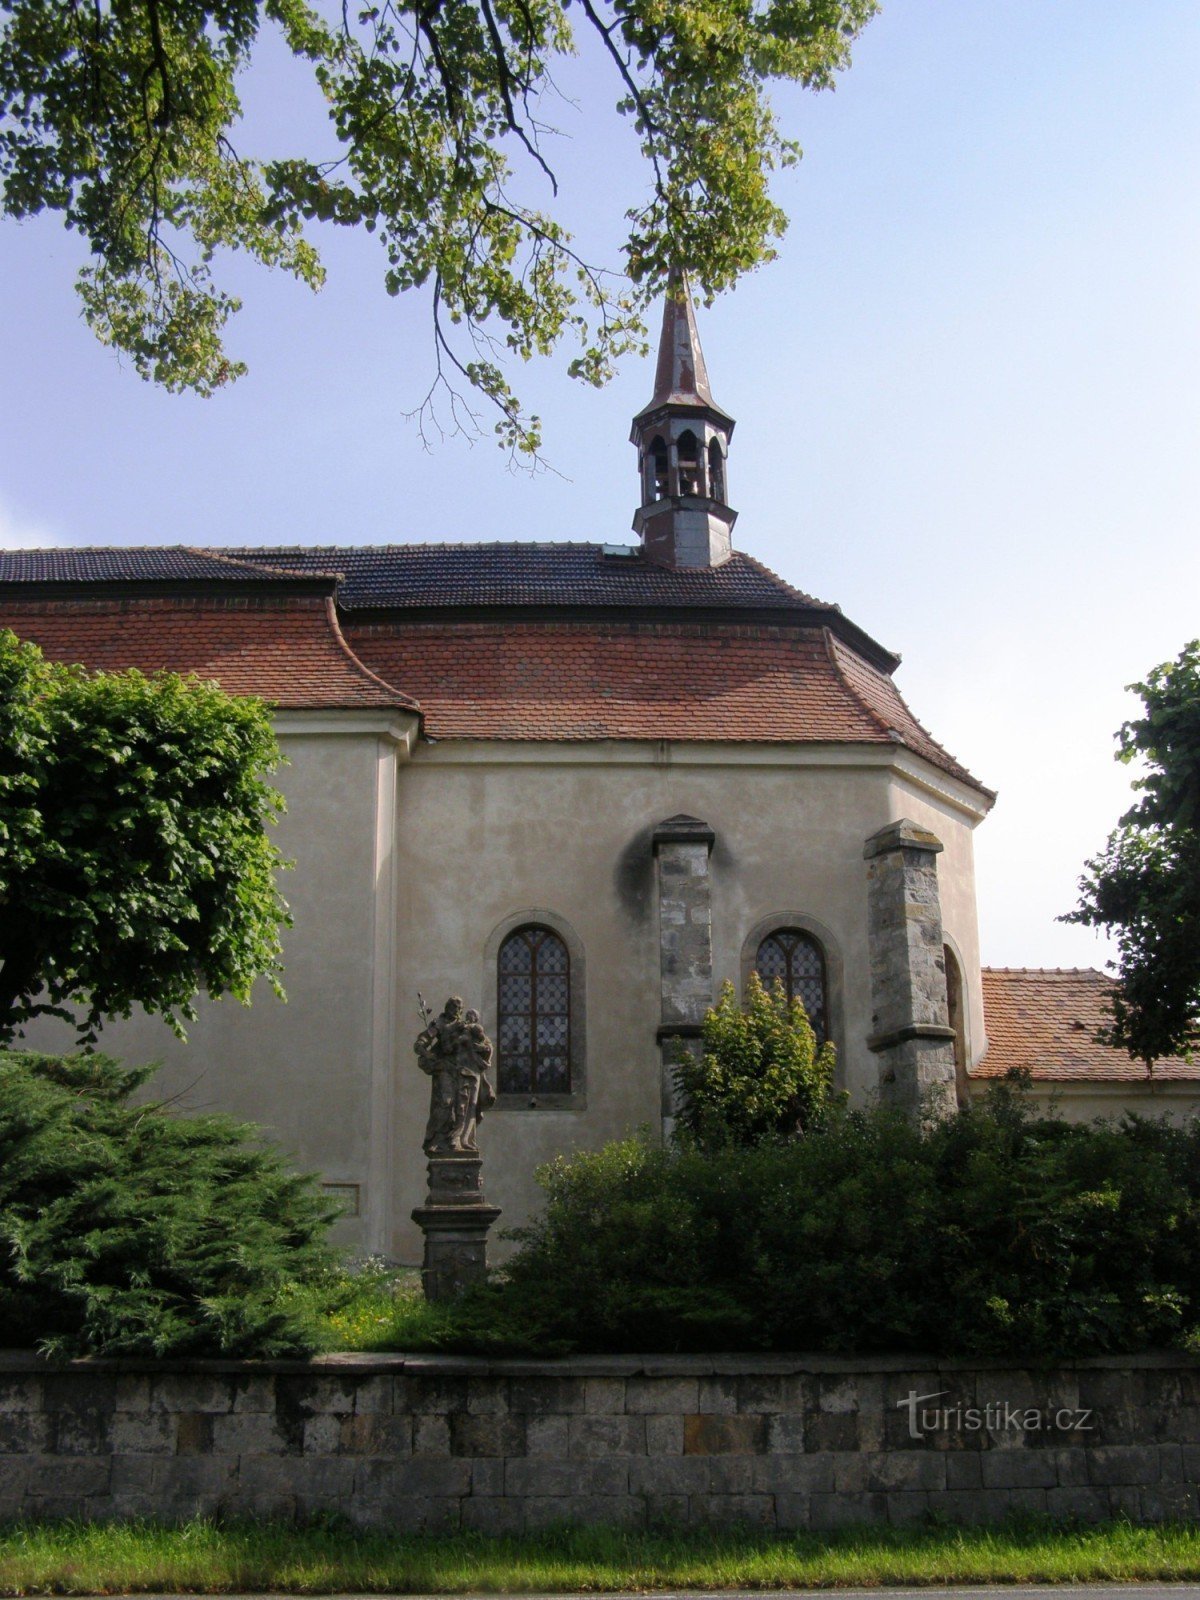 Libuň - Kościół św. Jaskółka oknówka